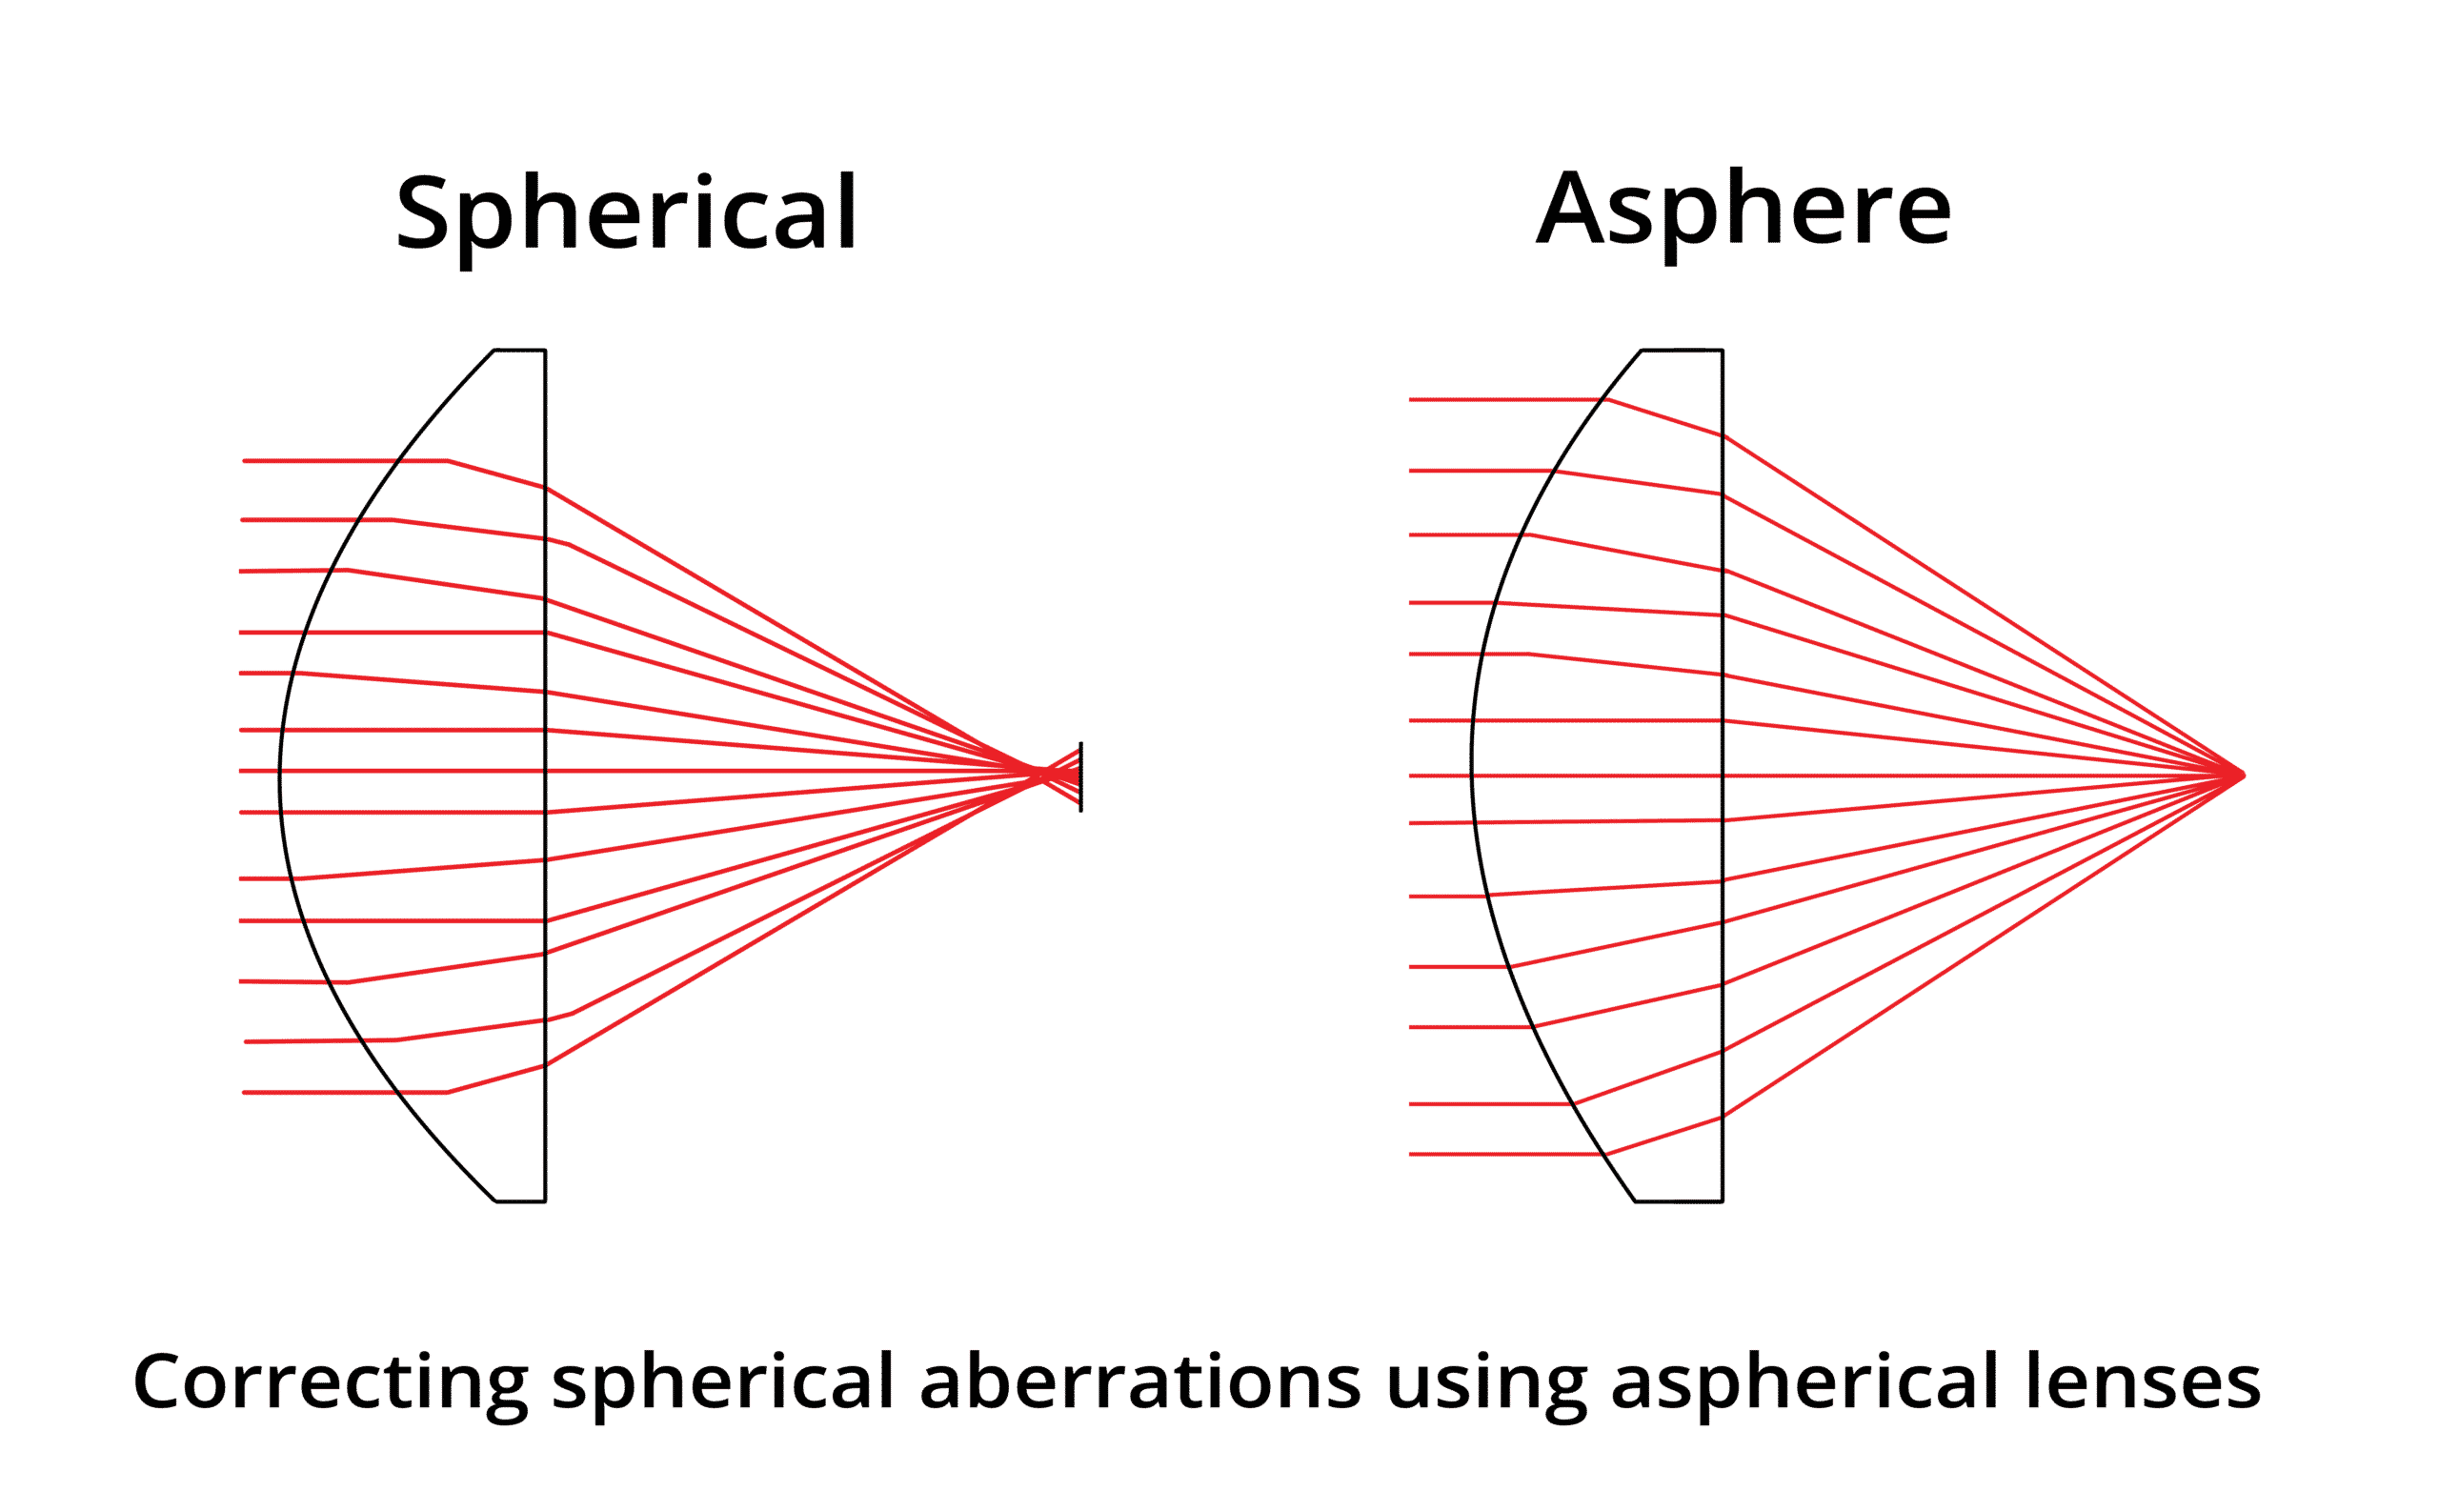 Aspherical lenses